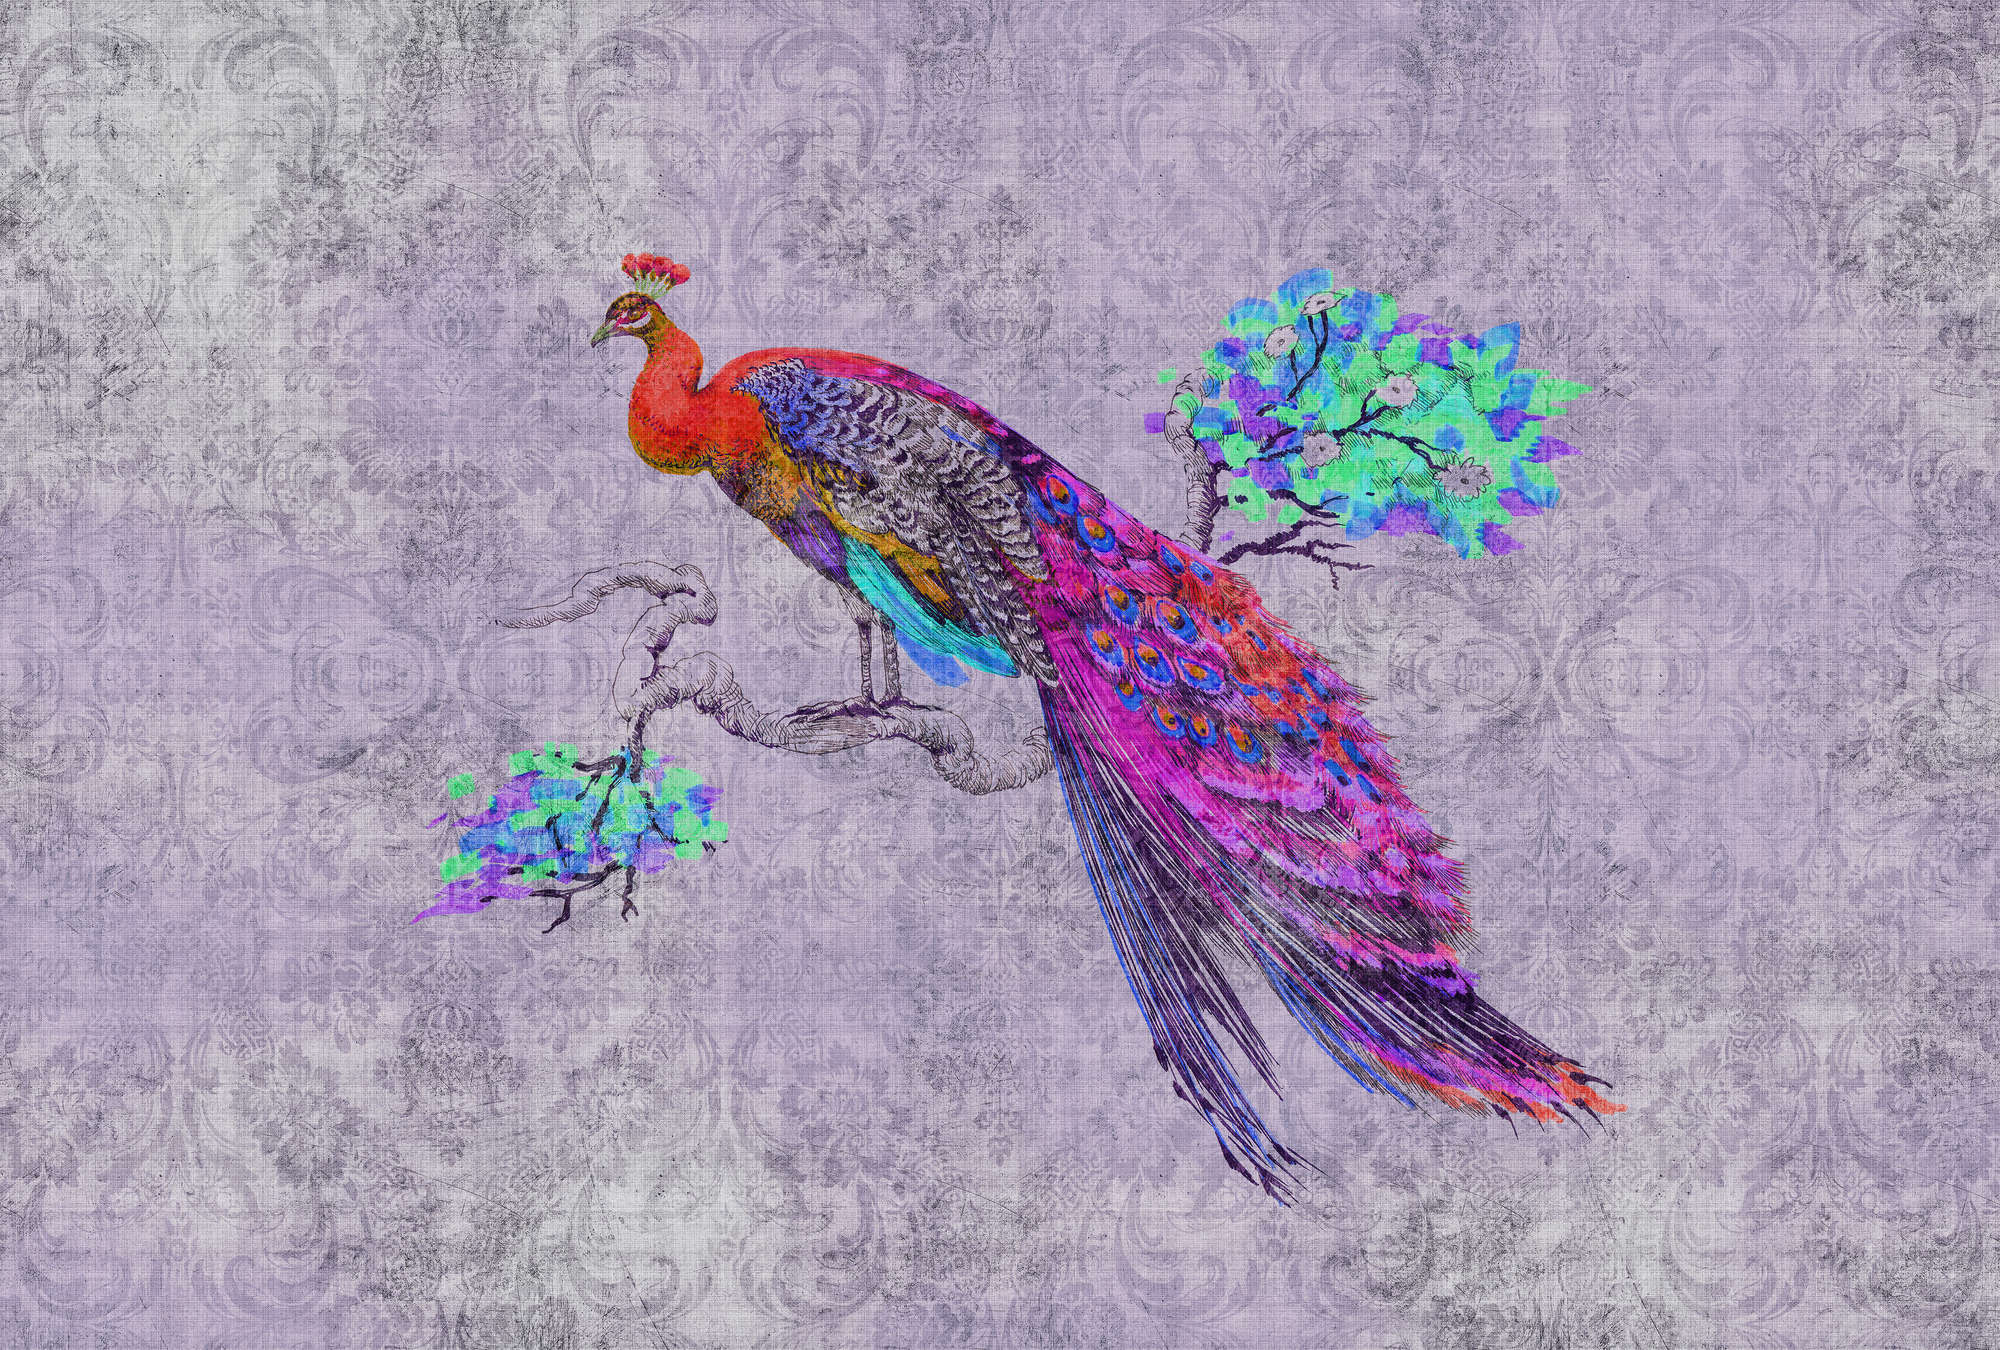             Peacock 3 - Carta da parati colorata con pavone - Natura qualita consistenza in lino naturale - Materiali non tessuto liscio blu, rosa e perla
        